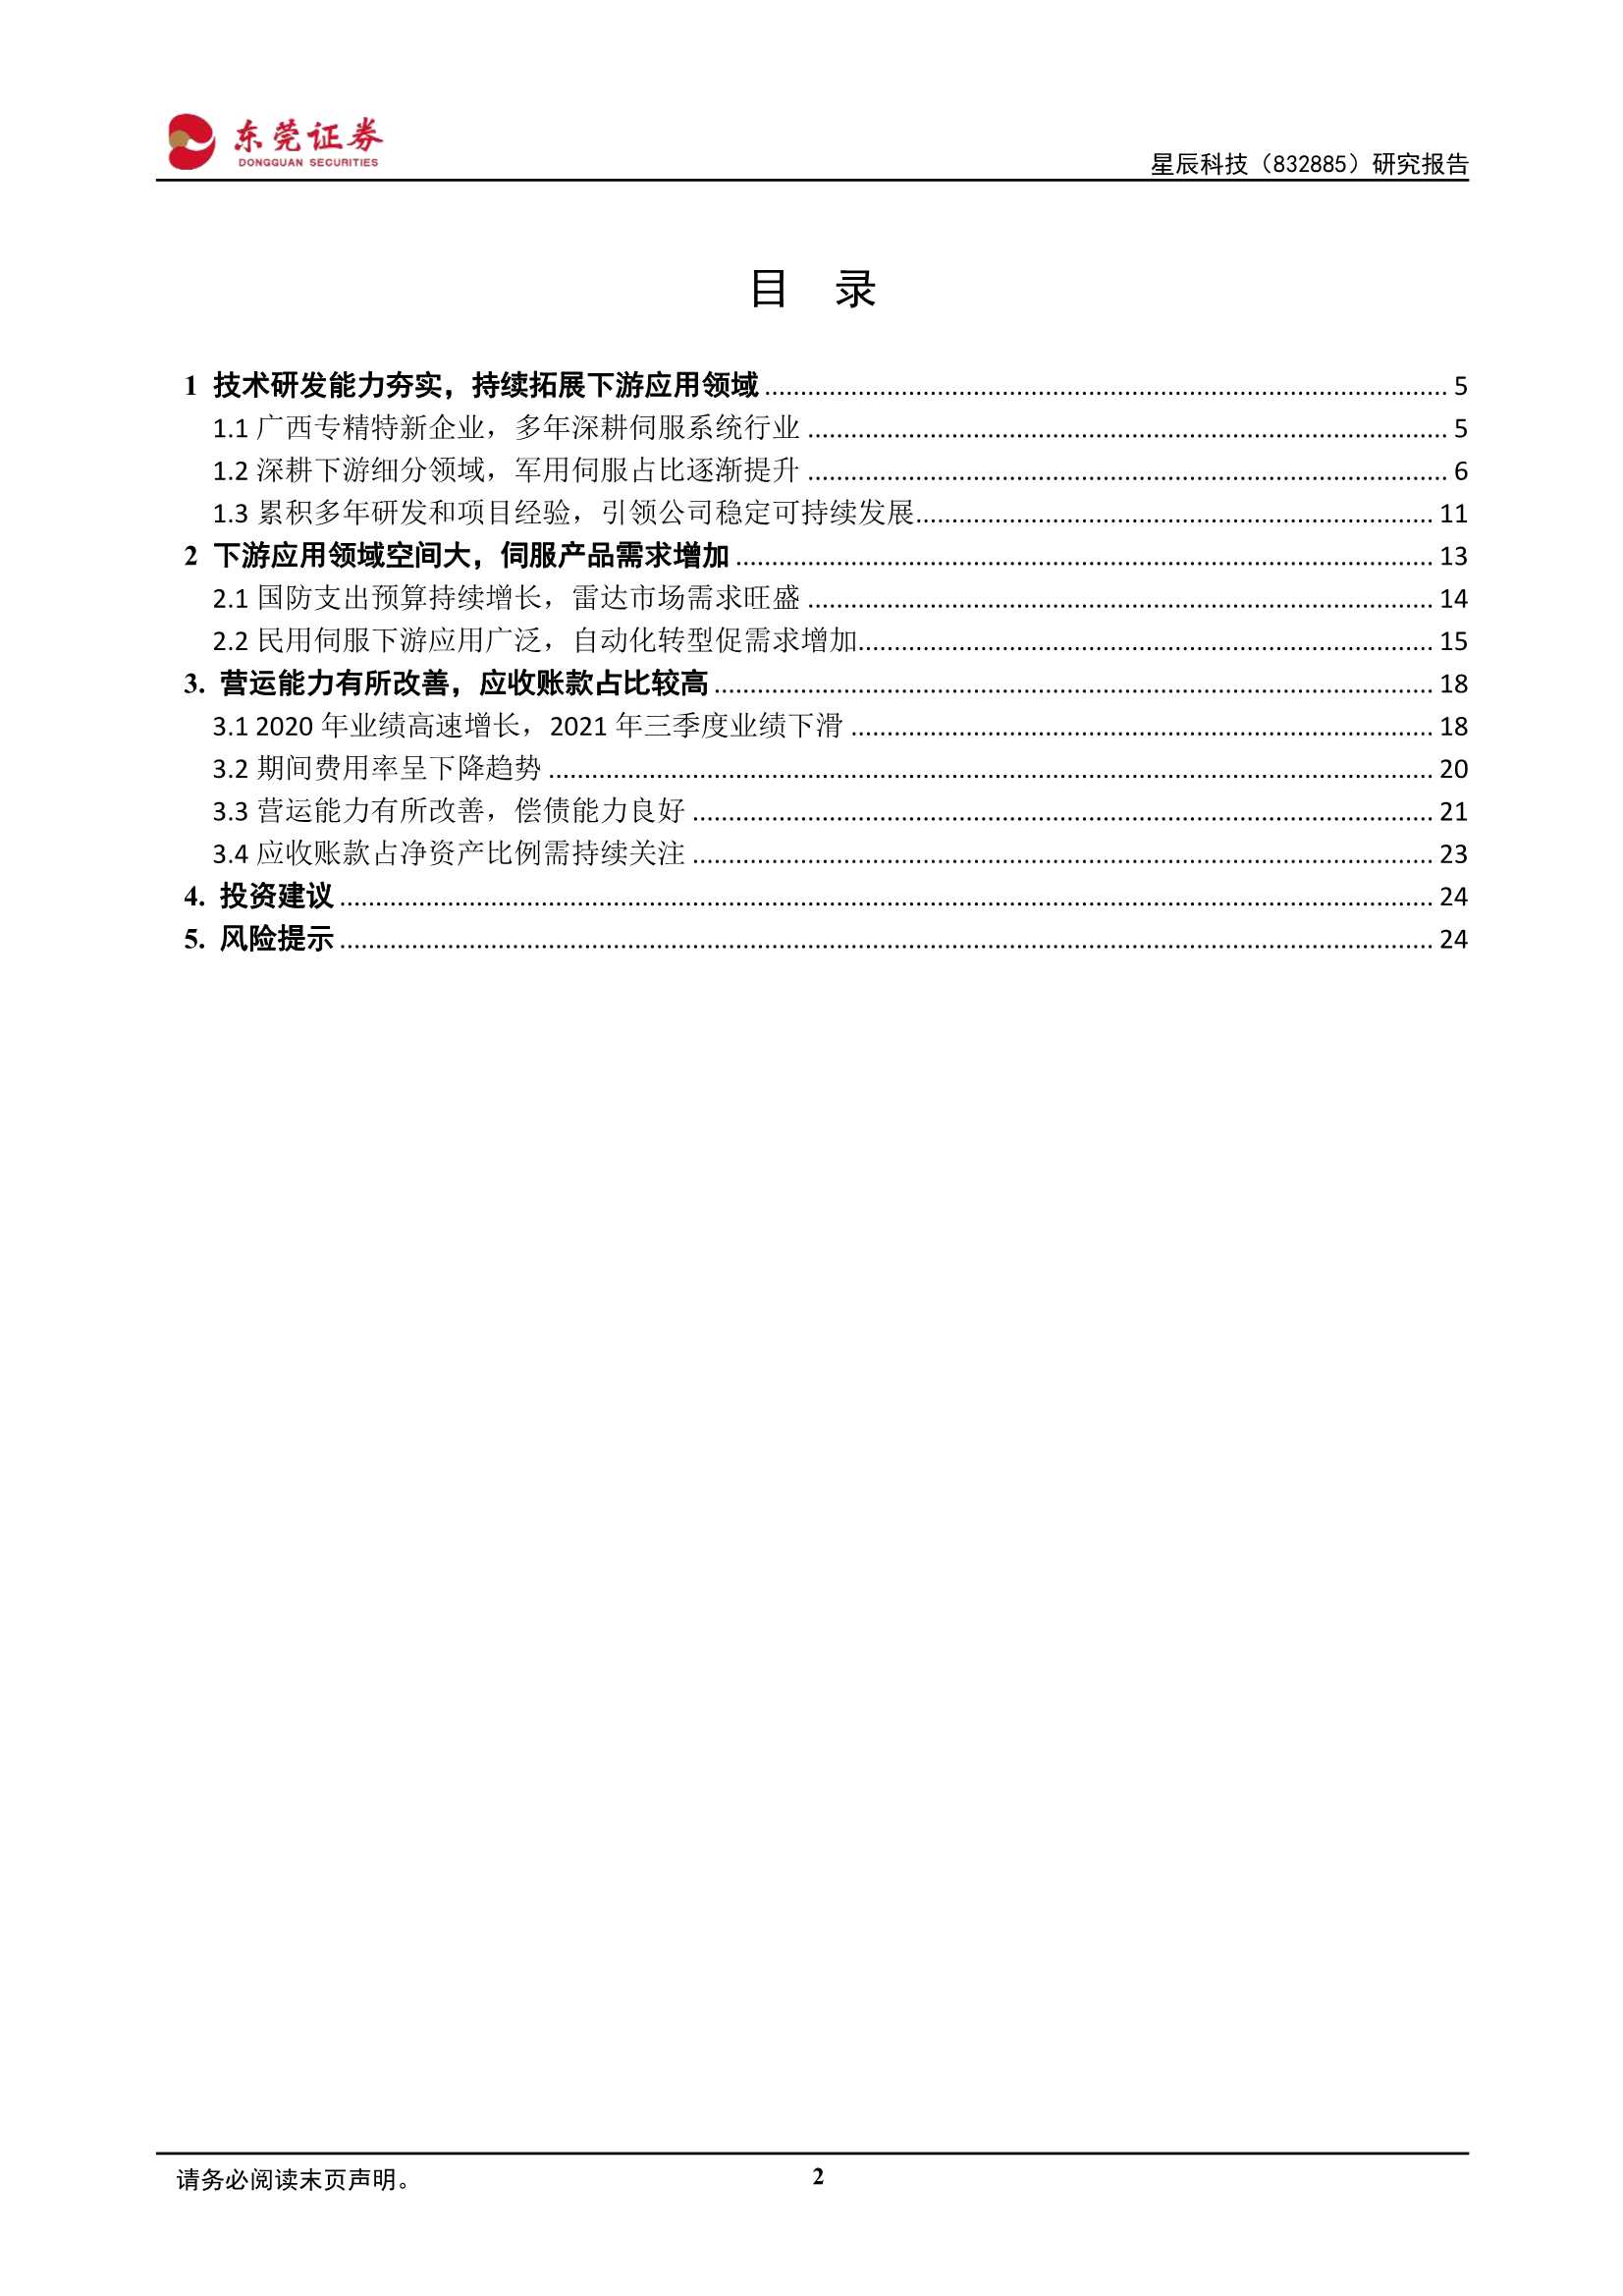 东莞证券-星辰科技-832885-研究报告 ：军民伺服齐并进，持续扩展新兴领域-20220228-25页